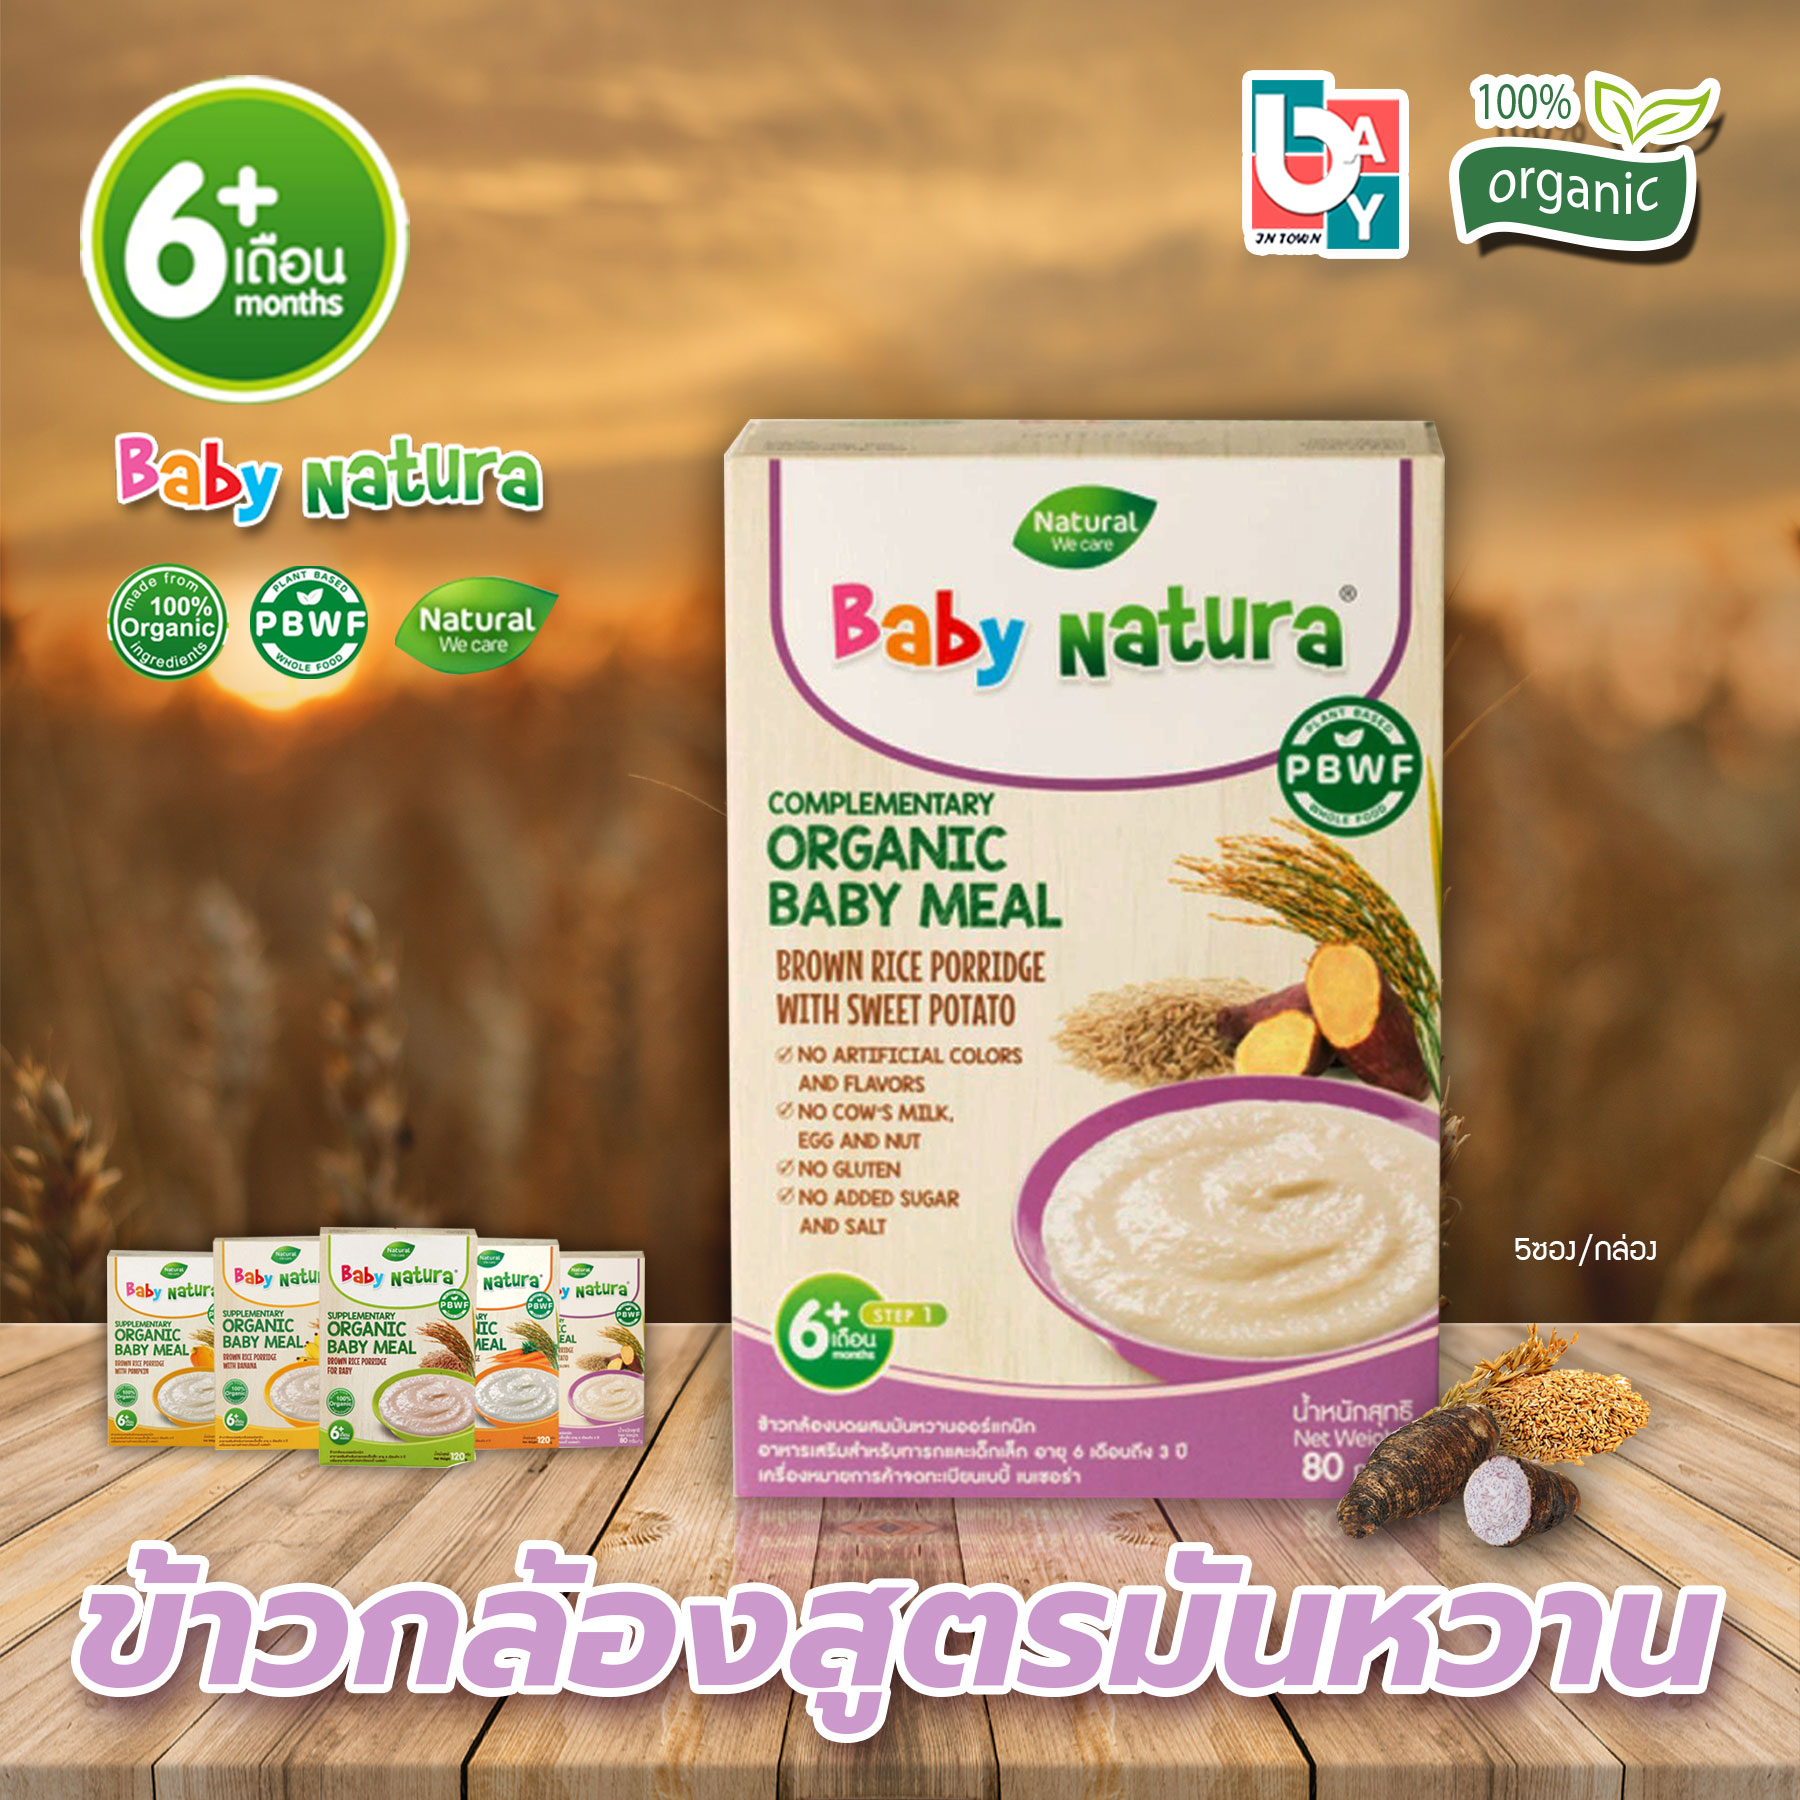 Baby Natura ข้าวกล้องบด ออร์แกรนิค Organic Baby meal สำหรับเด็กอายุ 6 เดือนขึ้นไป มี 7 รส ผลิตภัณฑ์อาหารเสริมออร์แกนิกสำหรับทารกและเด็กเล็กหนึ่งในทางเลือกสุขภาพที่ดีสำหรับลูกน้อย